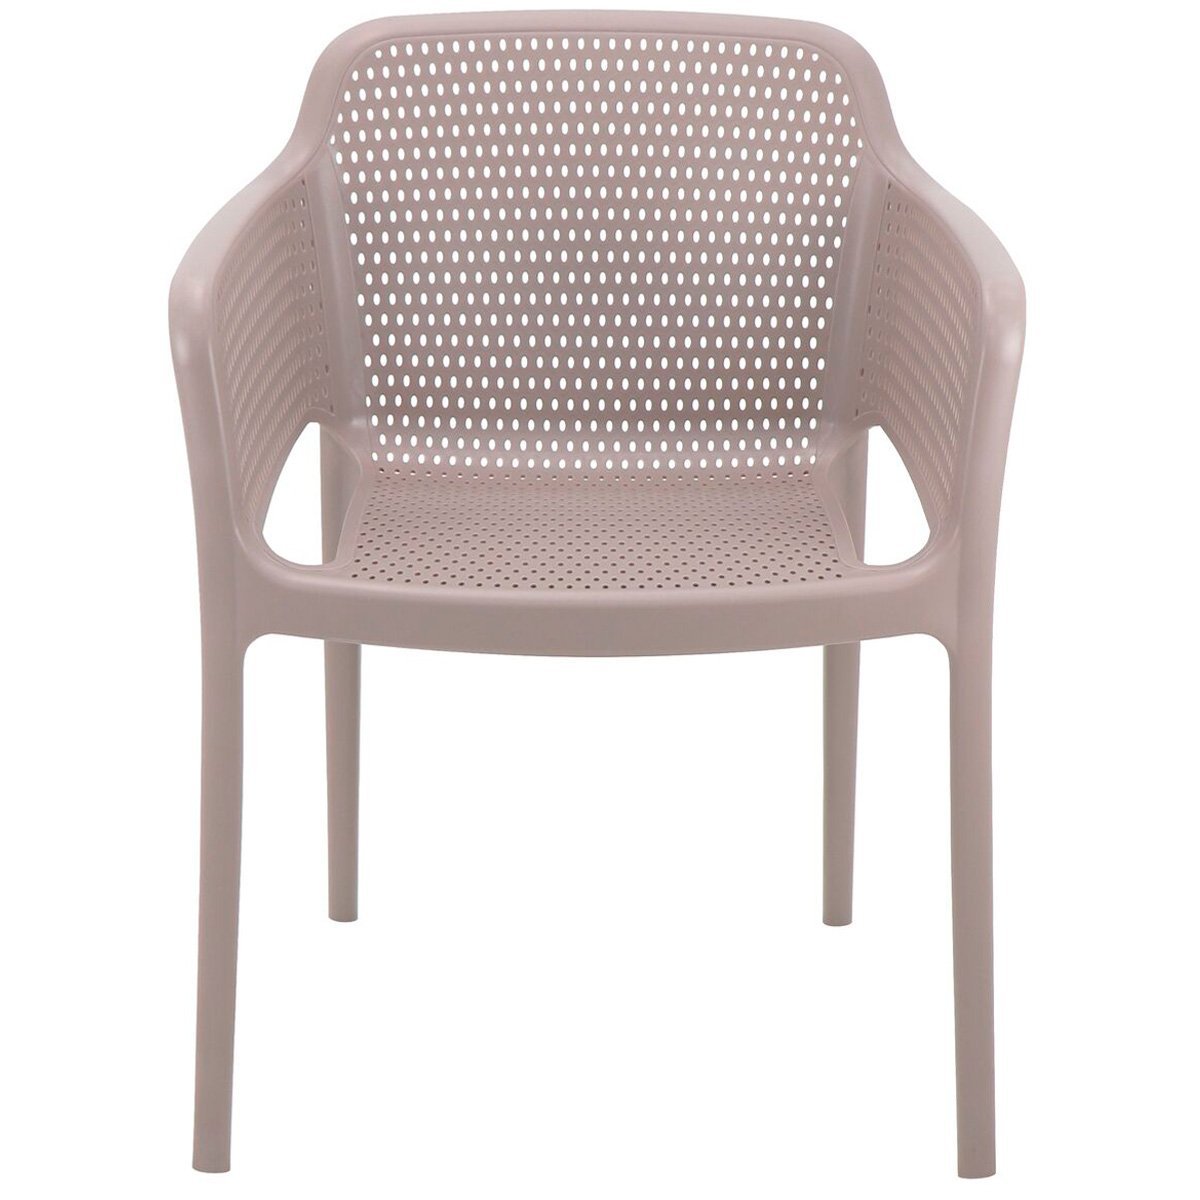 Conjunto 4 Cadeiras de Plástico em Polipropileno com Fibra de Vidro Gabriela - Tramontina - Camurça  - 4